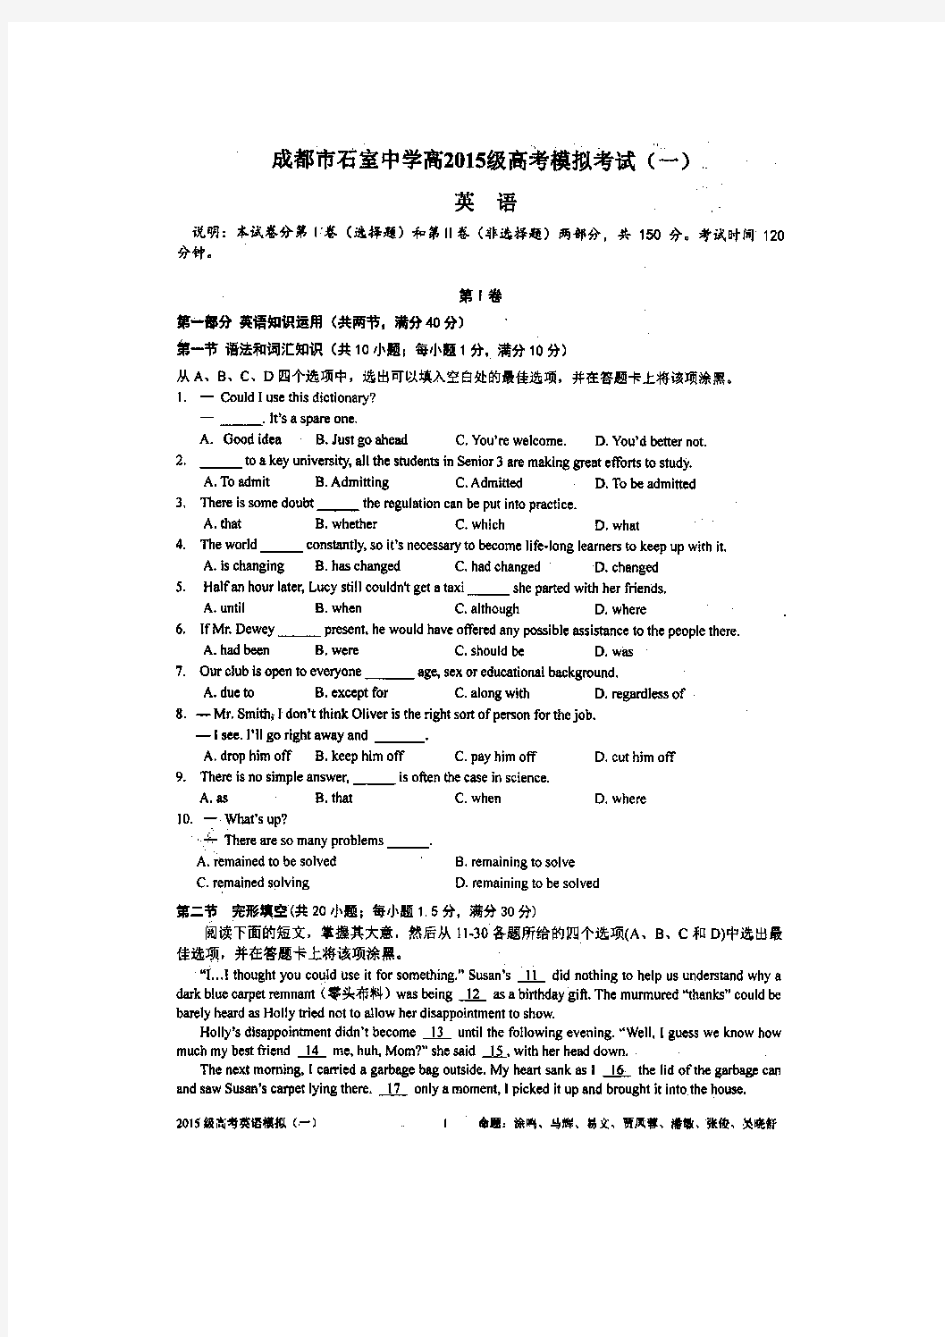 四川省成都石室中学2015届高考模拟考试(一)英语试卷-扫描版含答案